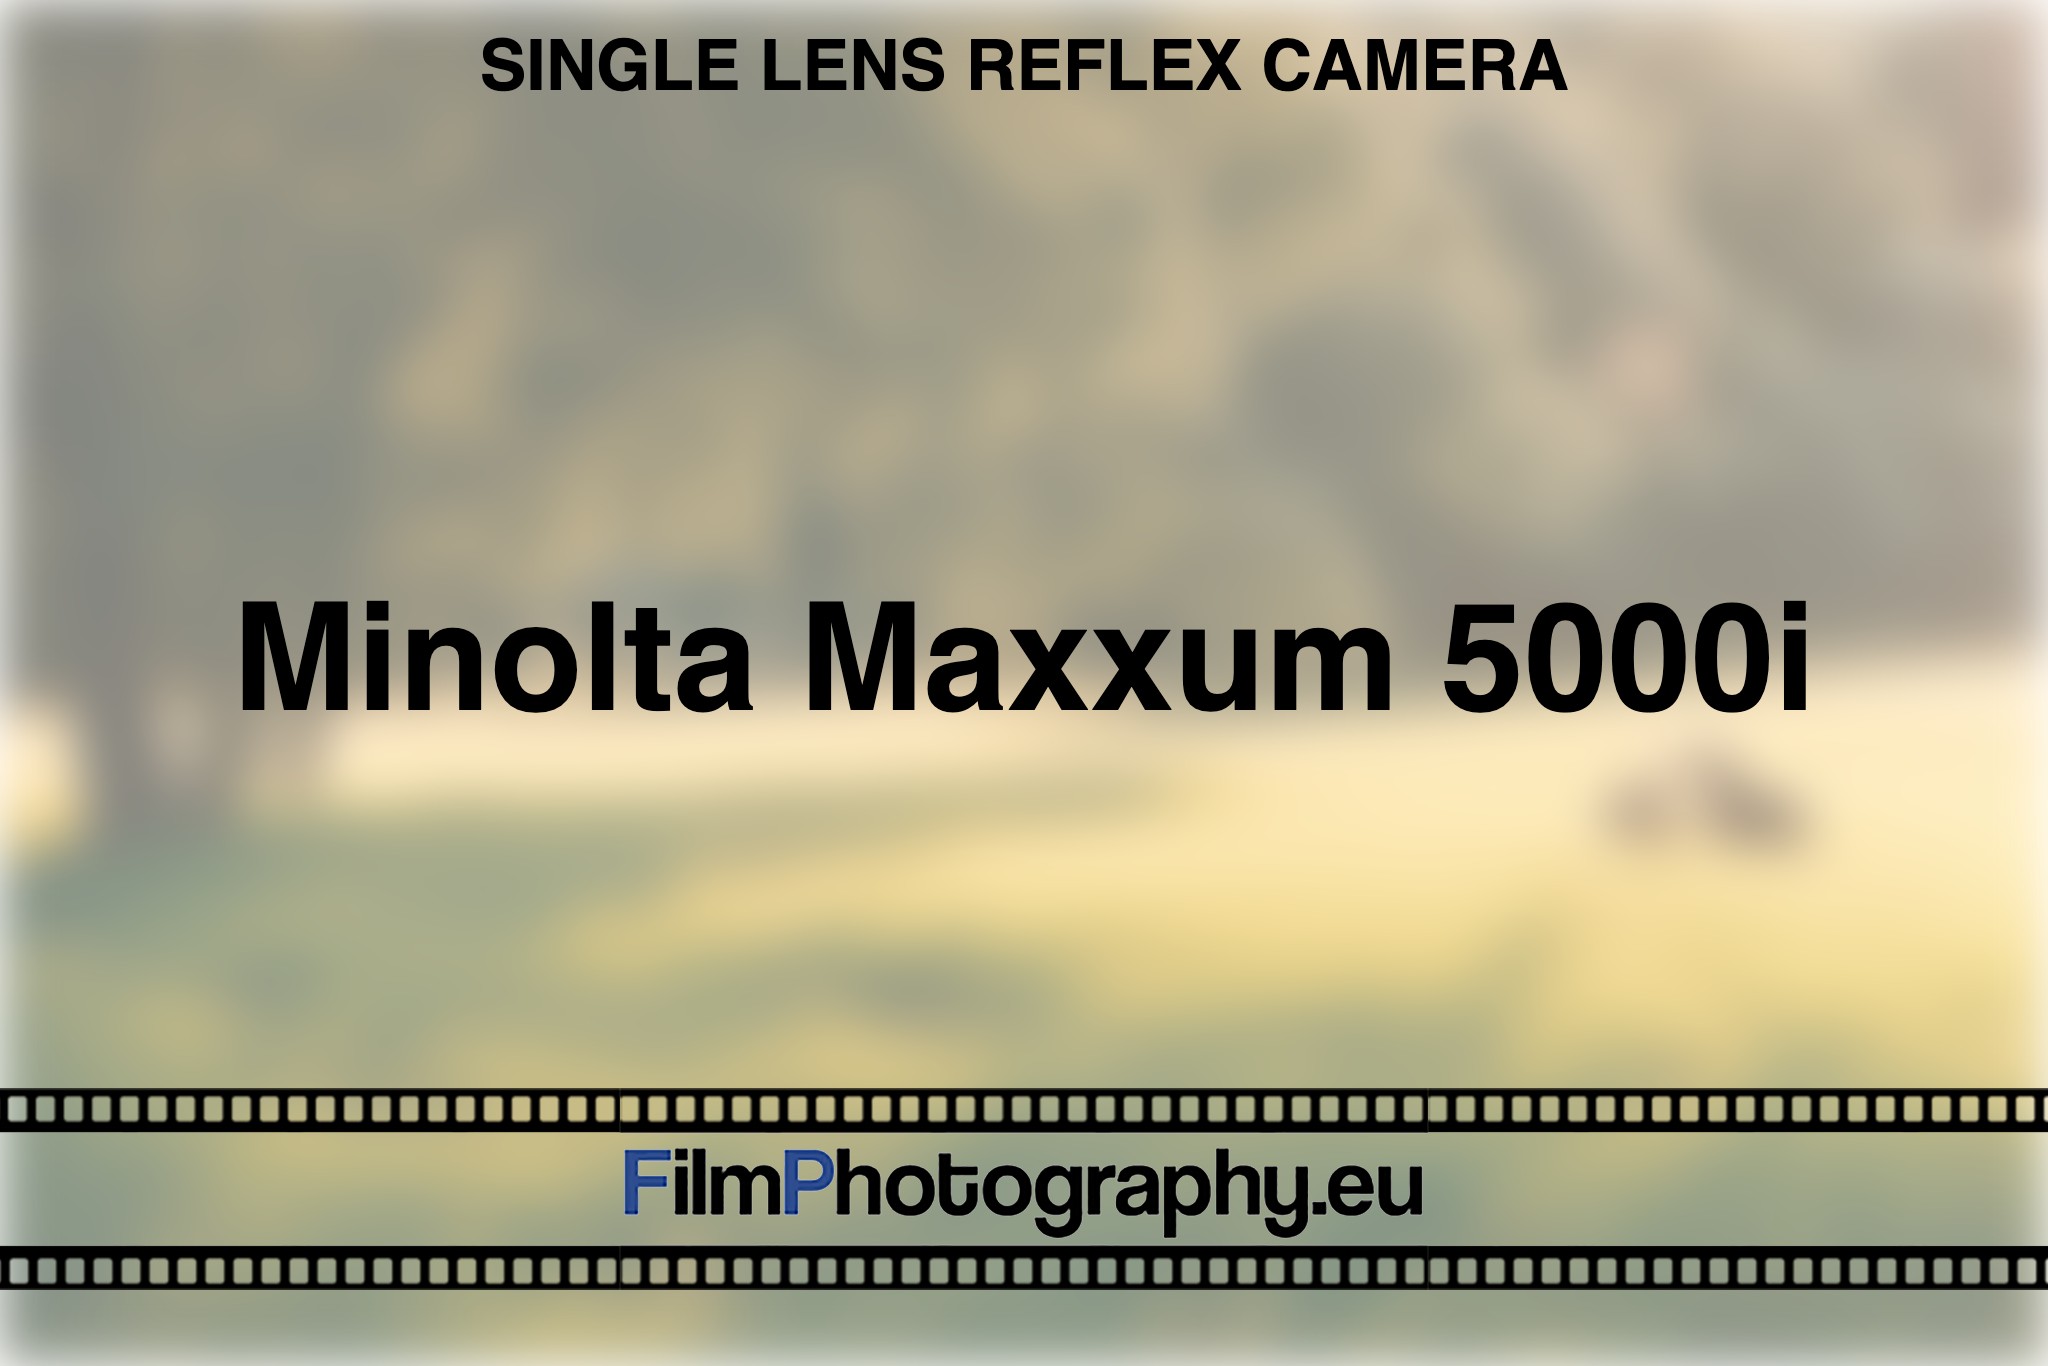 minolta-maxxum-5000i-single-lens-reflex-camera-bnv